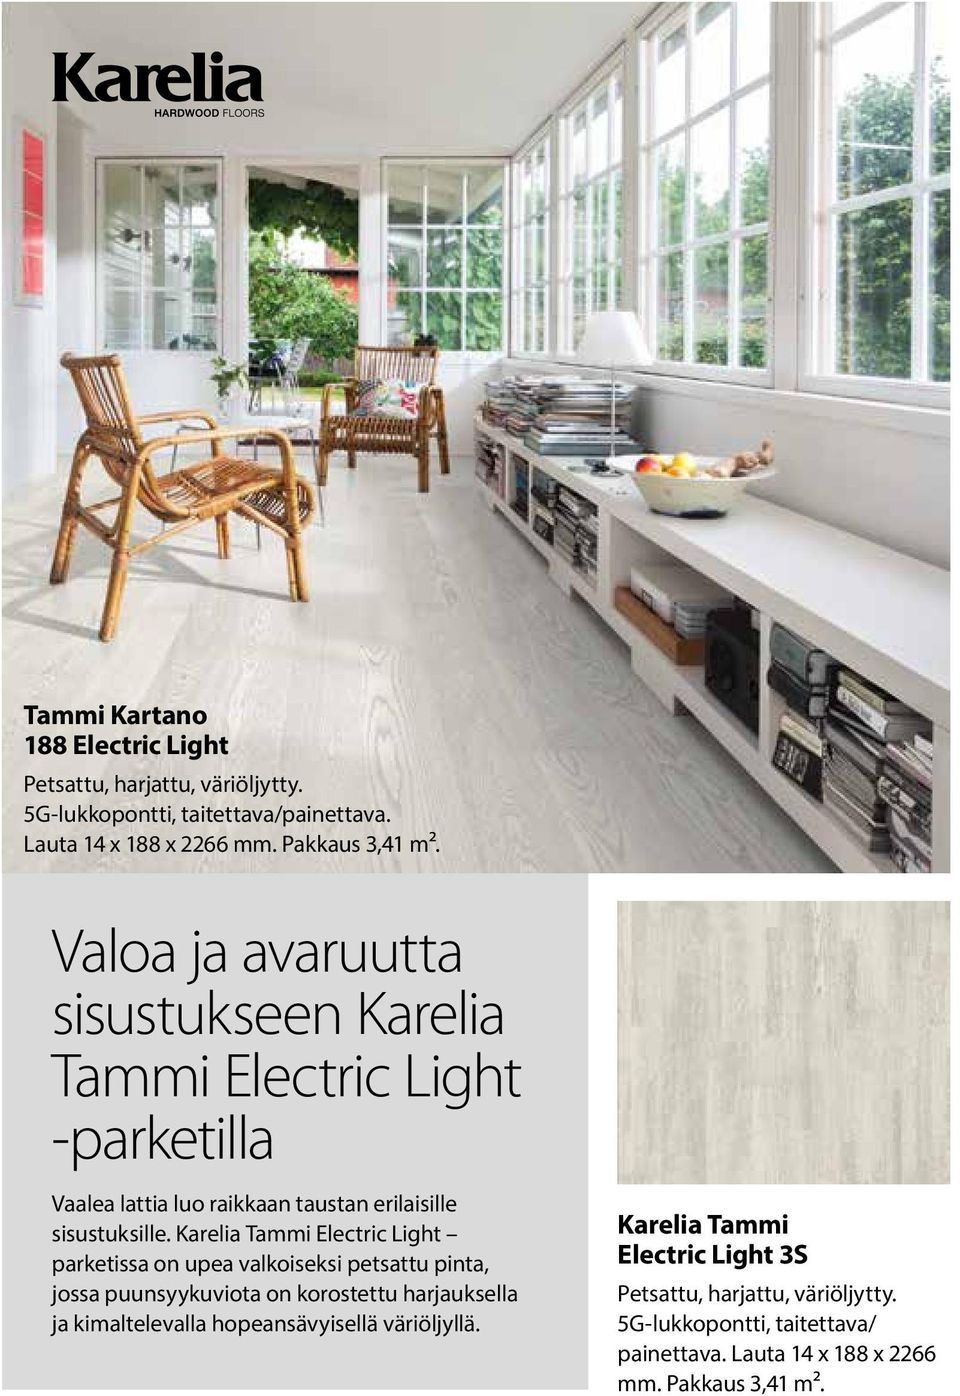 Karelia Tammi Electric Light parketissa on upea valkoiseksi petsattu pinta, jossa puunsyykuviota on korostettu harjauksella ja kimaltelevalla